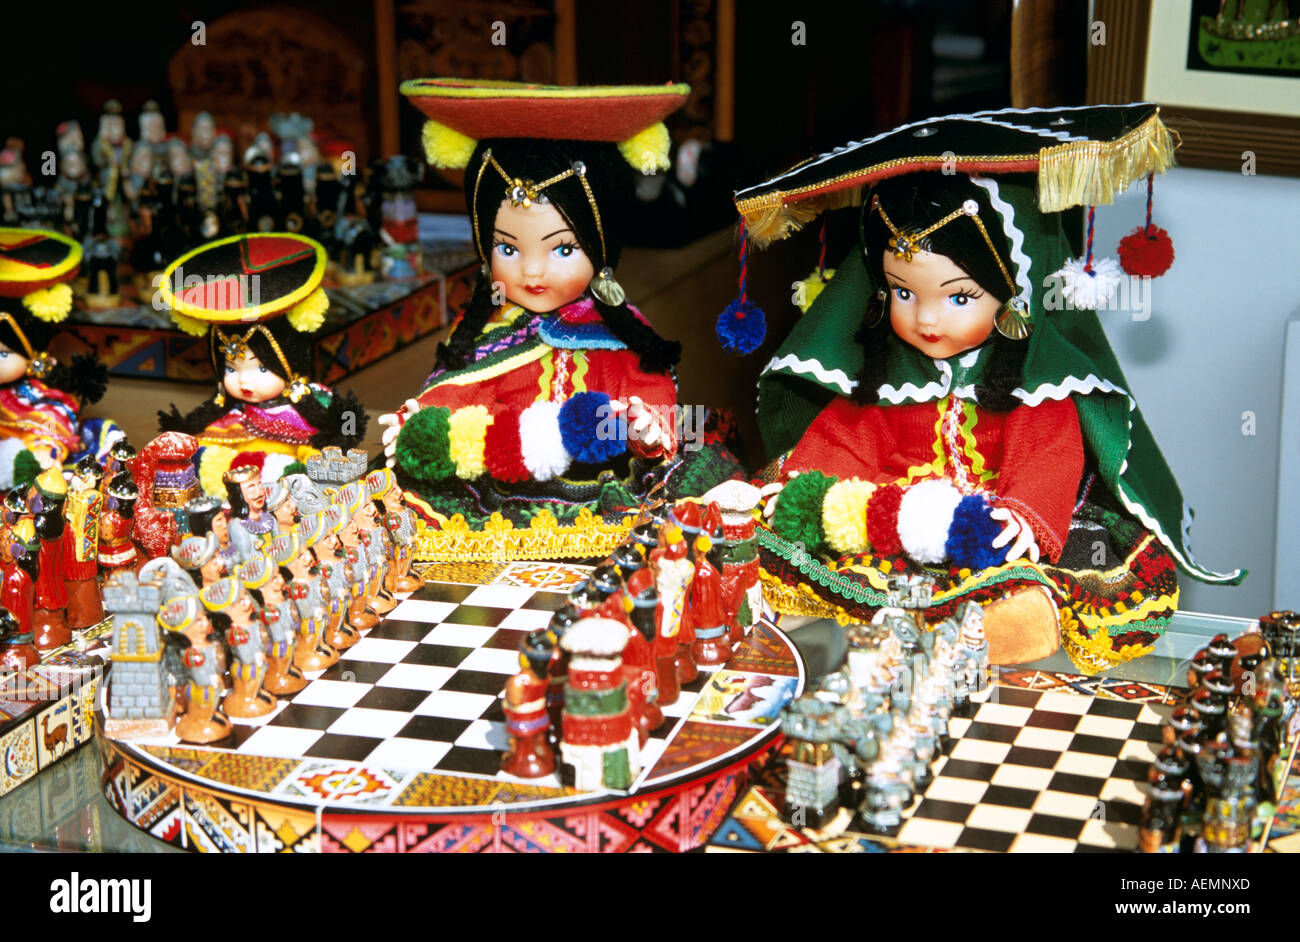 Bunten peruanischen Puppen in Kostüm und Schach sets außerhalb Geschenk  Shop, indischen Markt, Lima, Peru Stockfotografie - Alamy